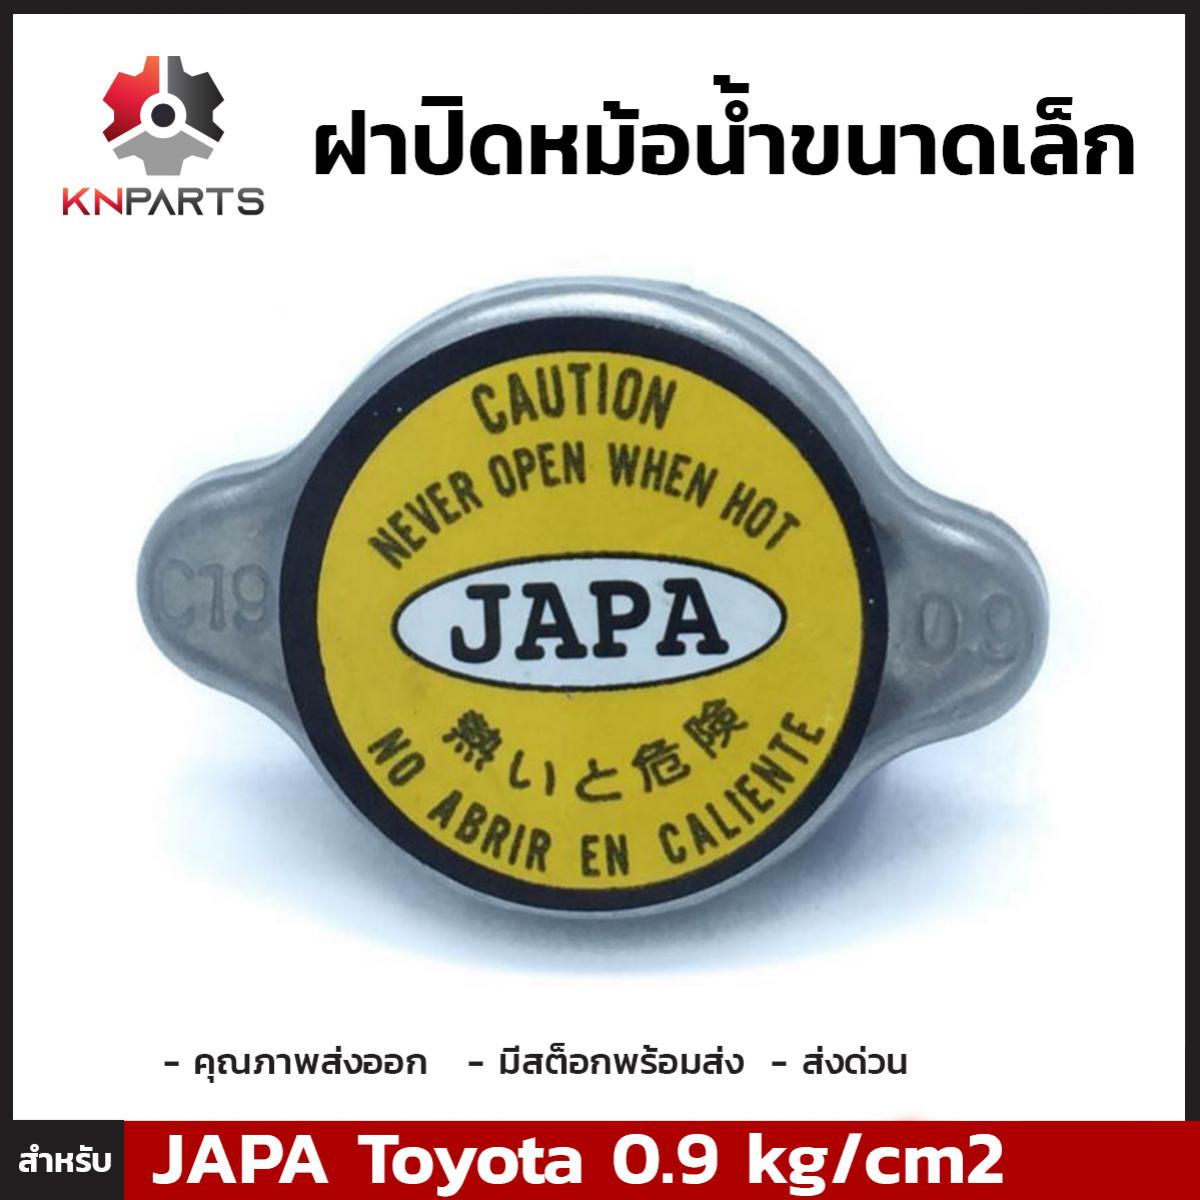 ฝาปิดหม้อน้ำ สำหรับ Toyota (Small) 0.9 kg/cm2 JAPA C19 100%